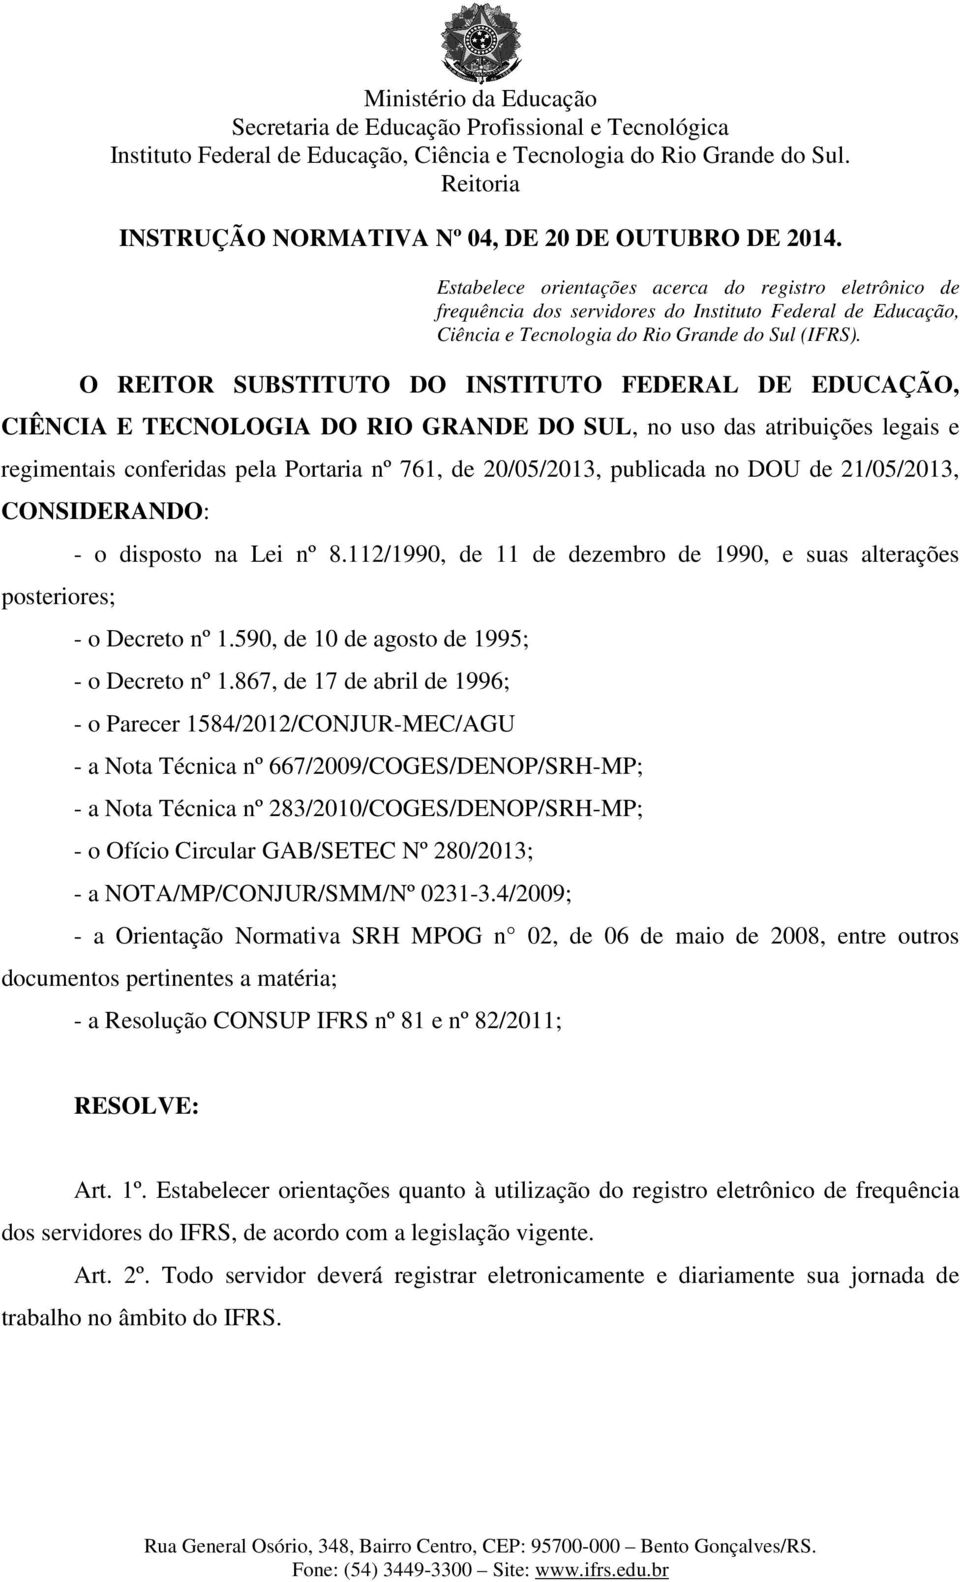 O REITOR SUBSTITUTO DO INSTITUTO FEDERAL DE EDUCAÇÃO, CIÊNCIA E TECNOLOGIA DO RIO GRANDE DO SUL, no uso das atribuições legais e regimentais conferidas pela Portaria nº 761, de 20/05/2013, publicada